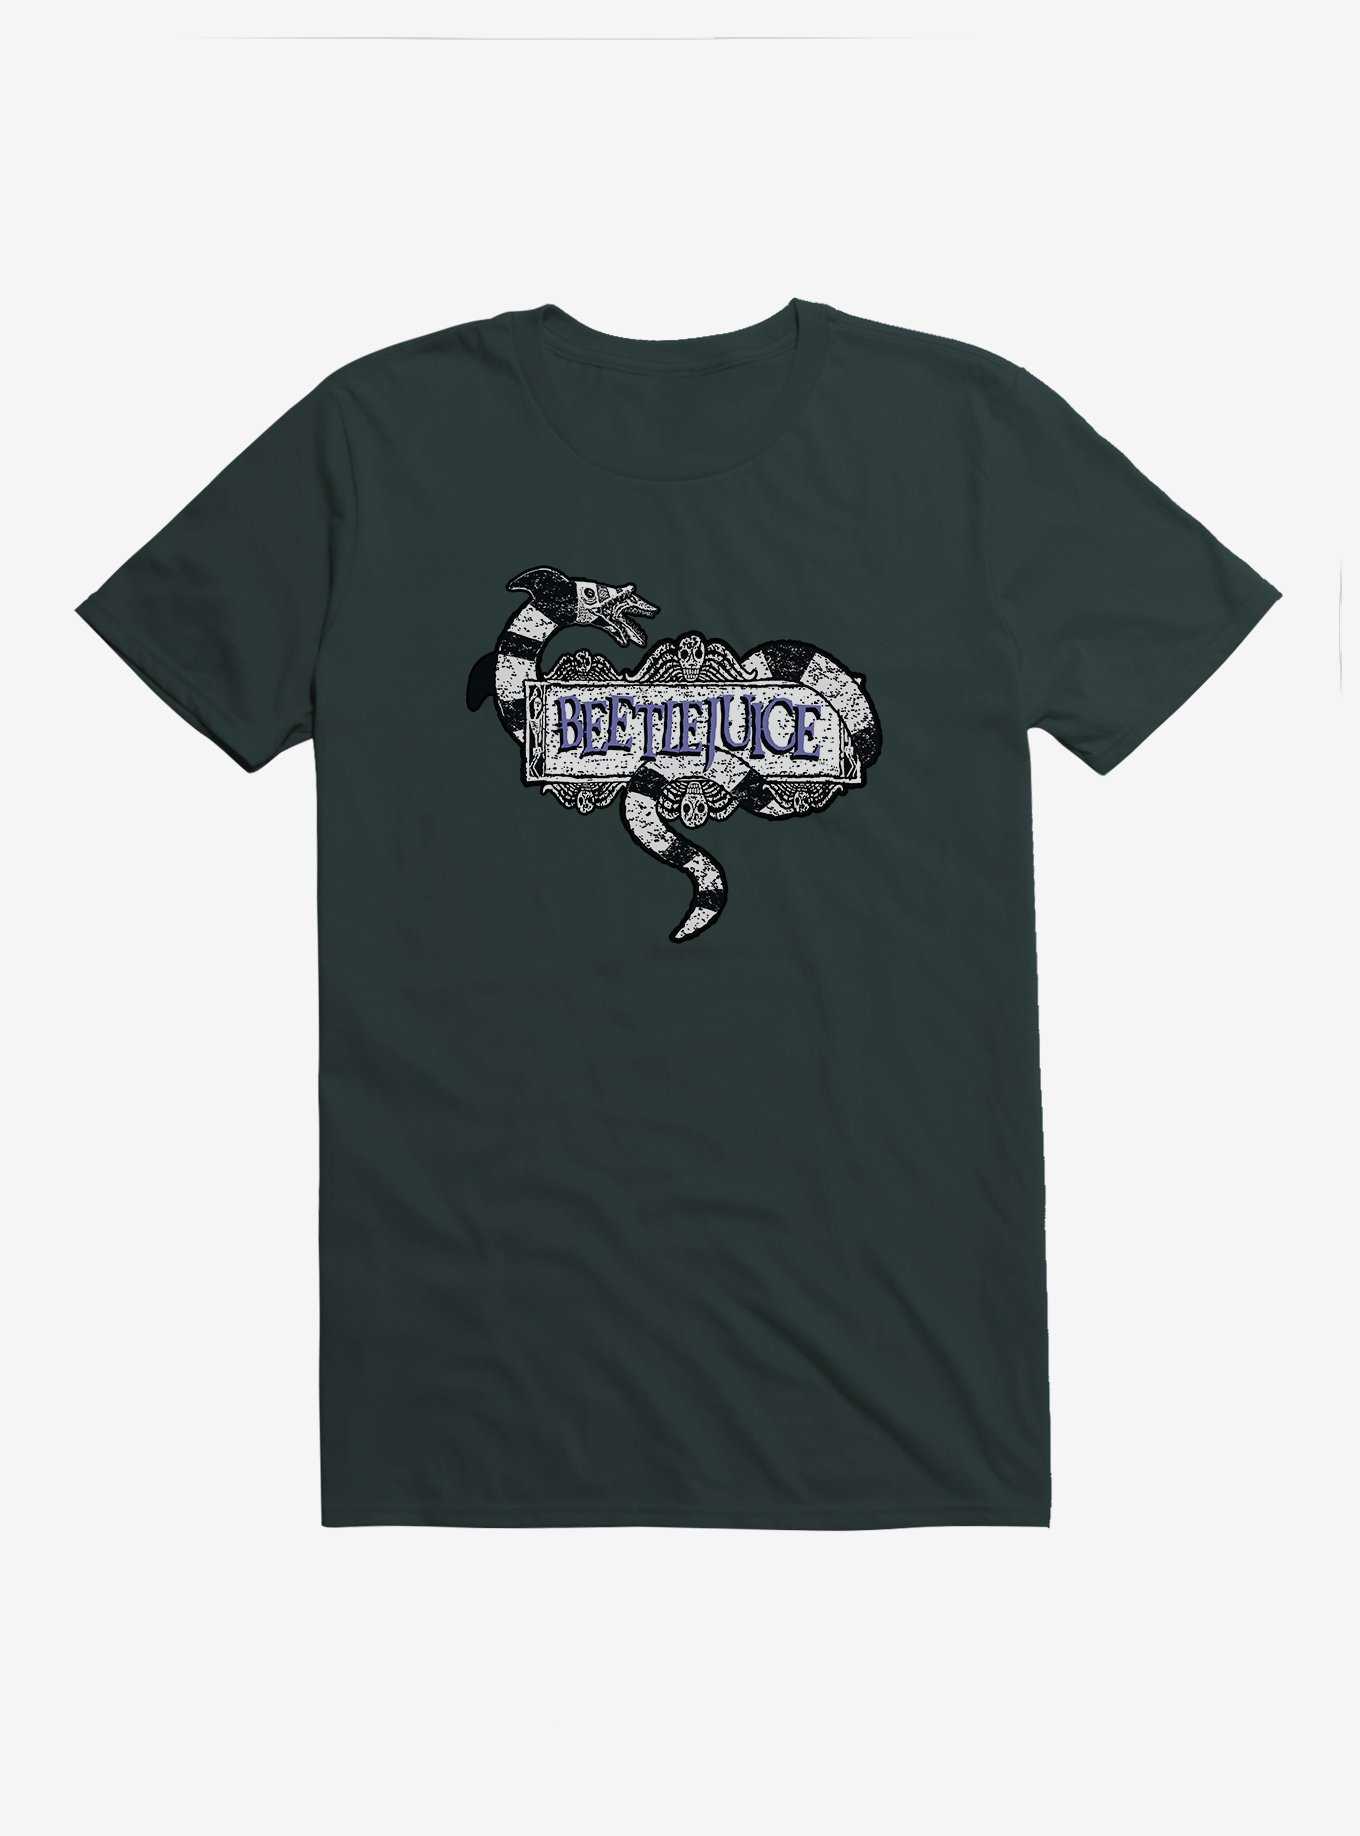 Beetlejuice Title Snake T-Shirt, , hi-res